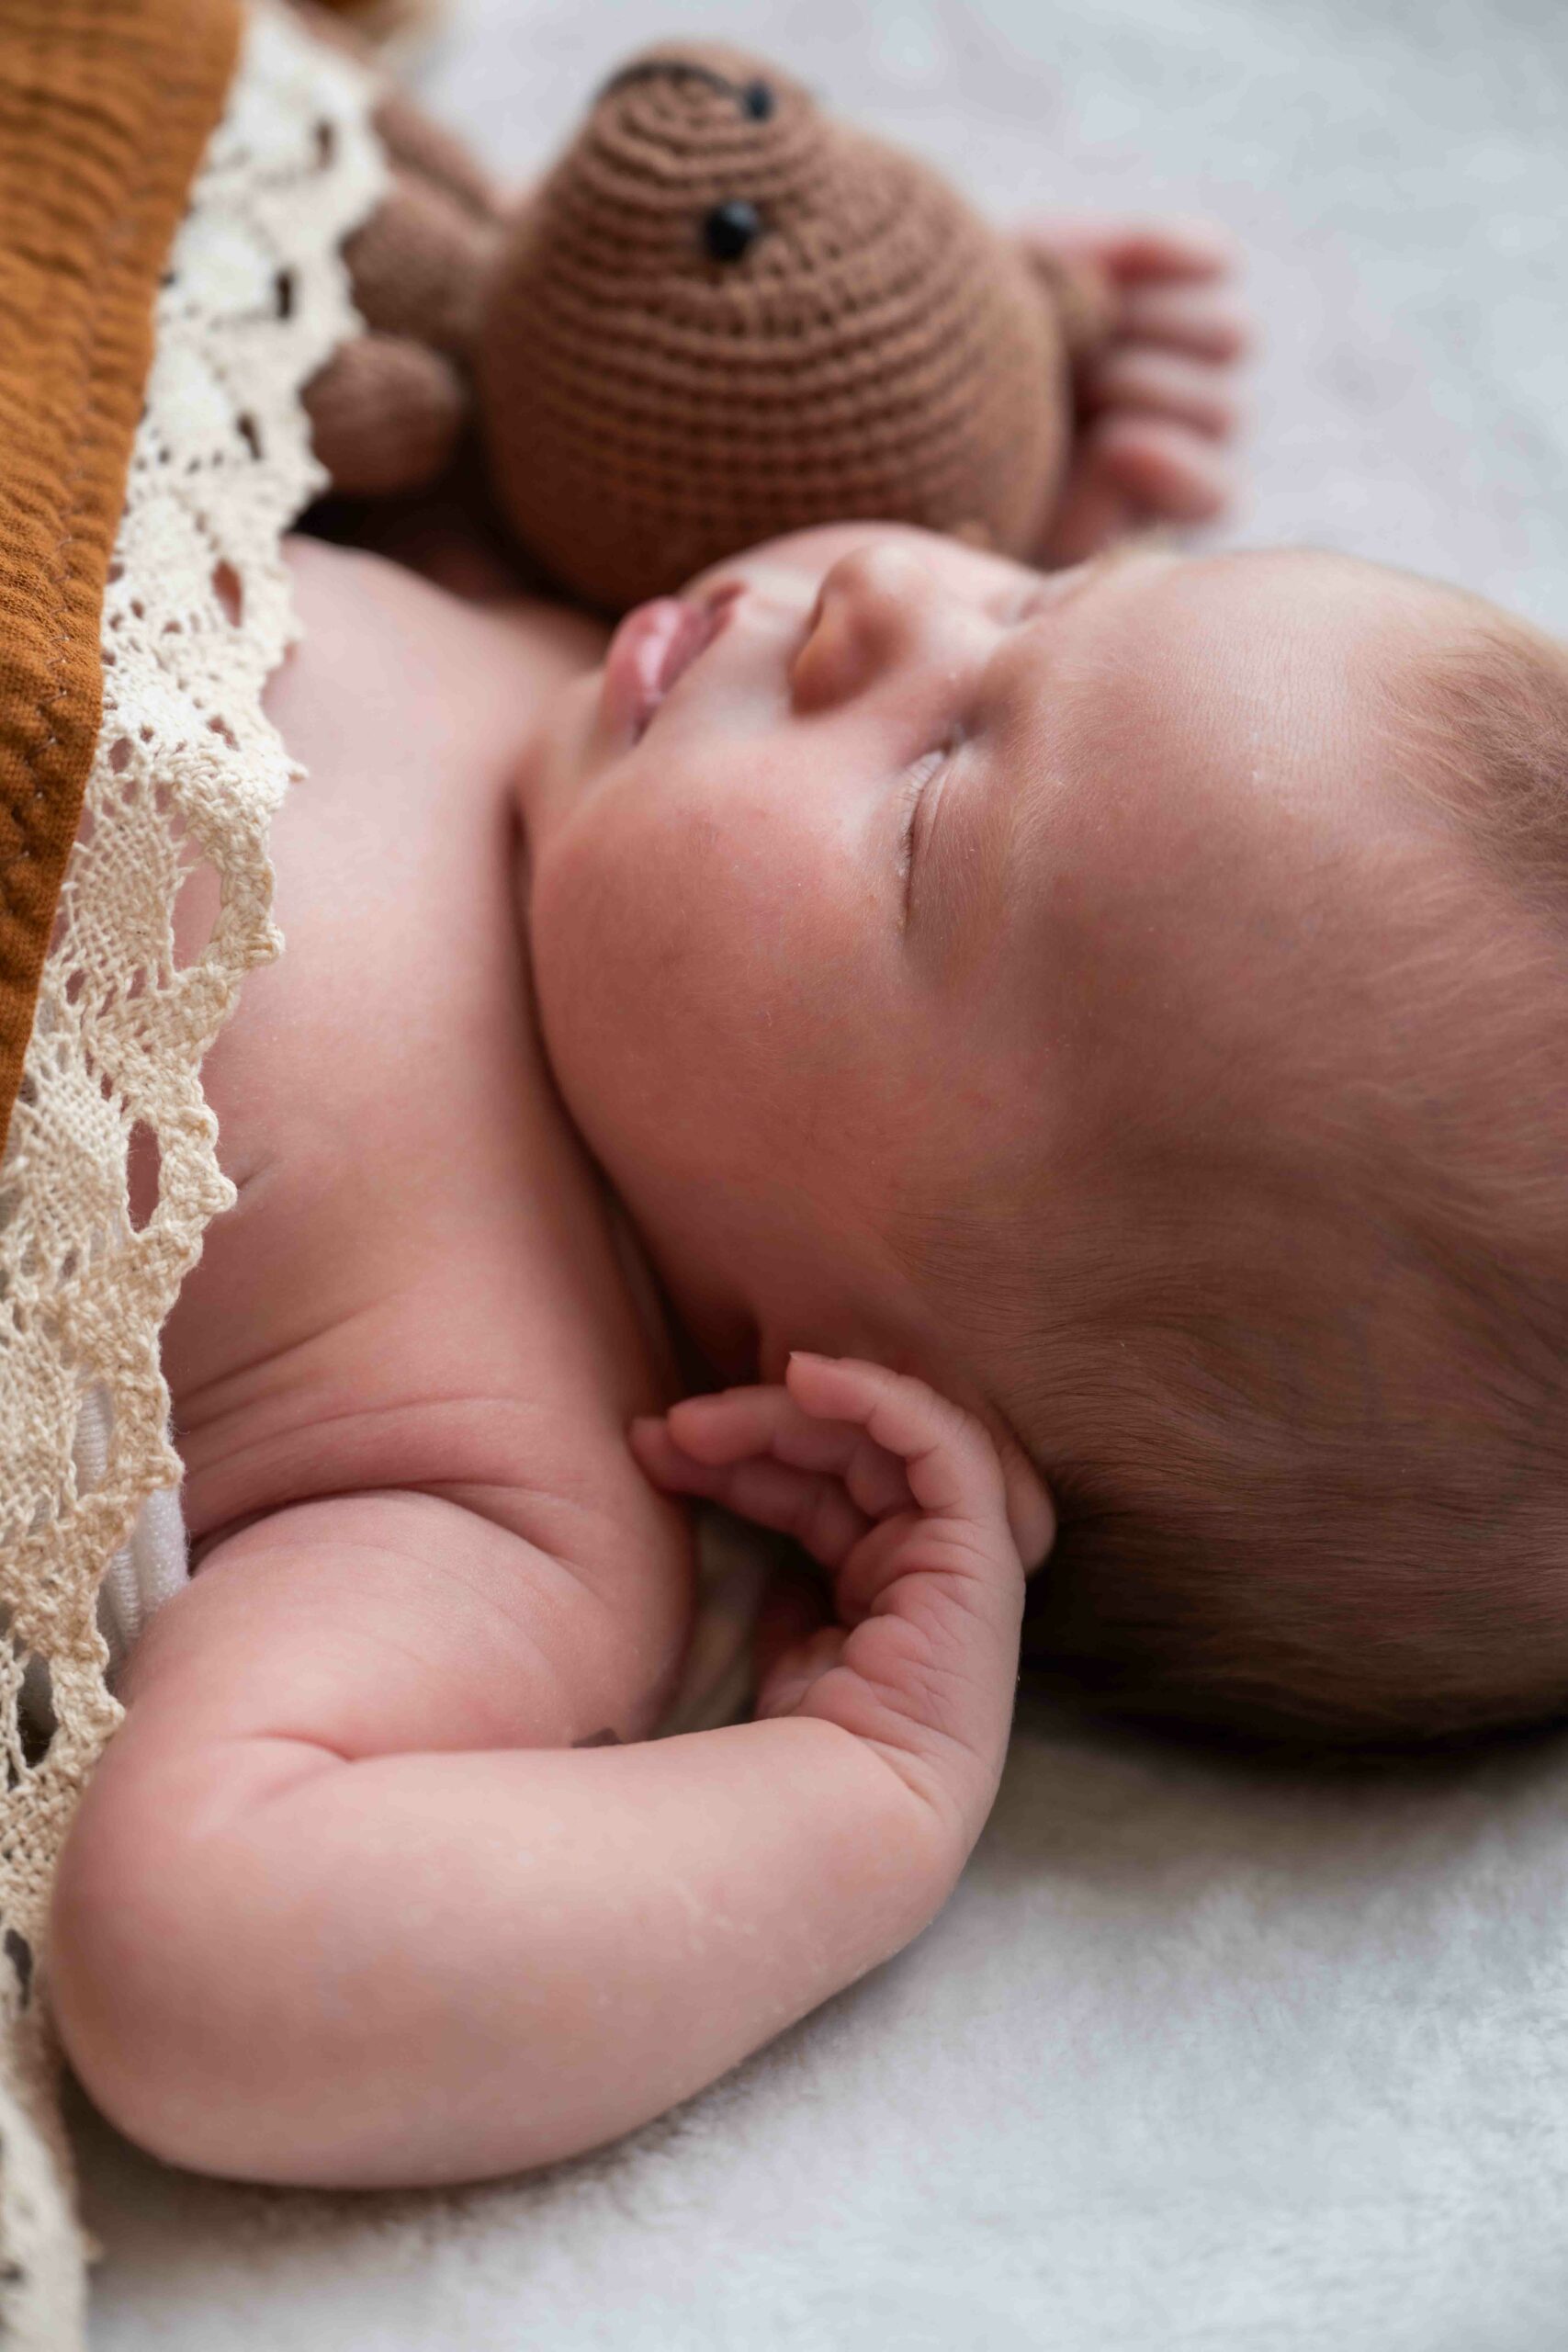 Babymädchen in braunes Tuch gehüllt, Seitlich fotografier